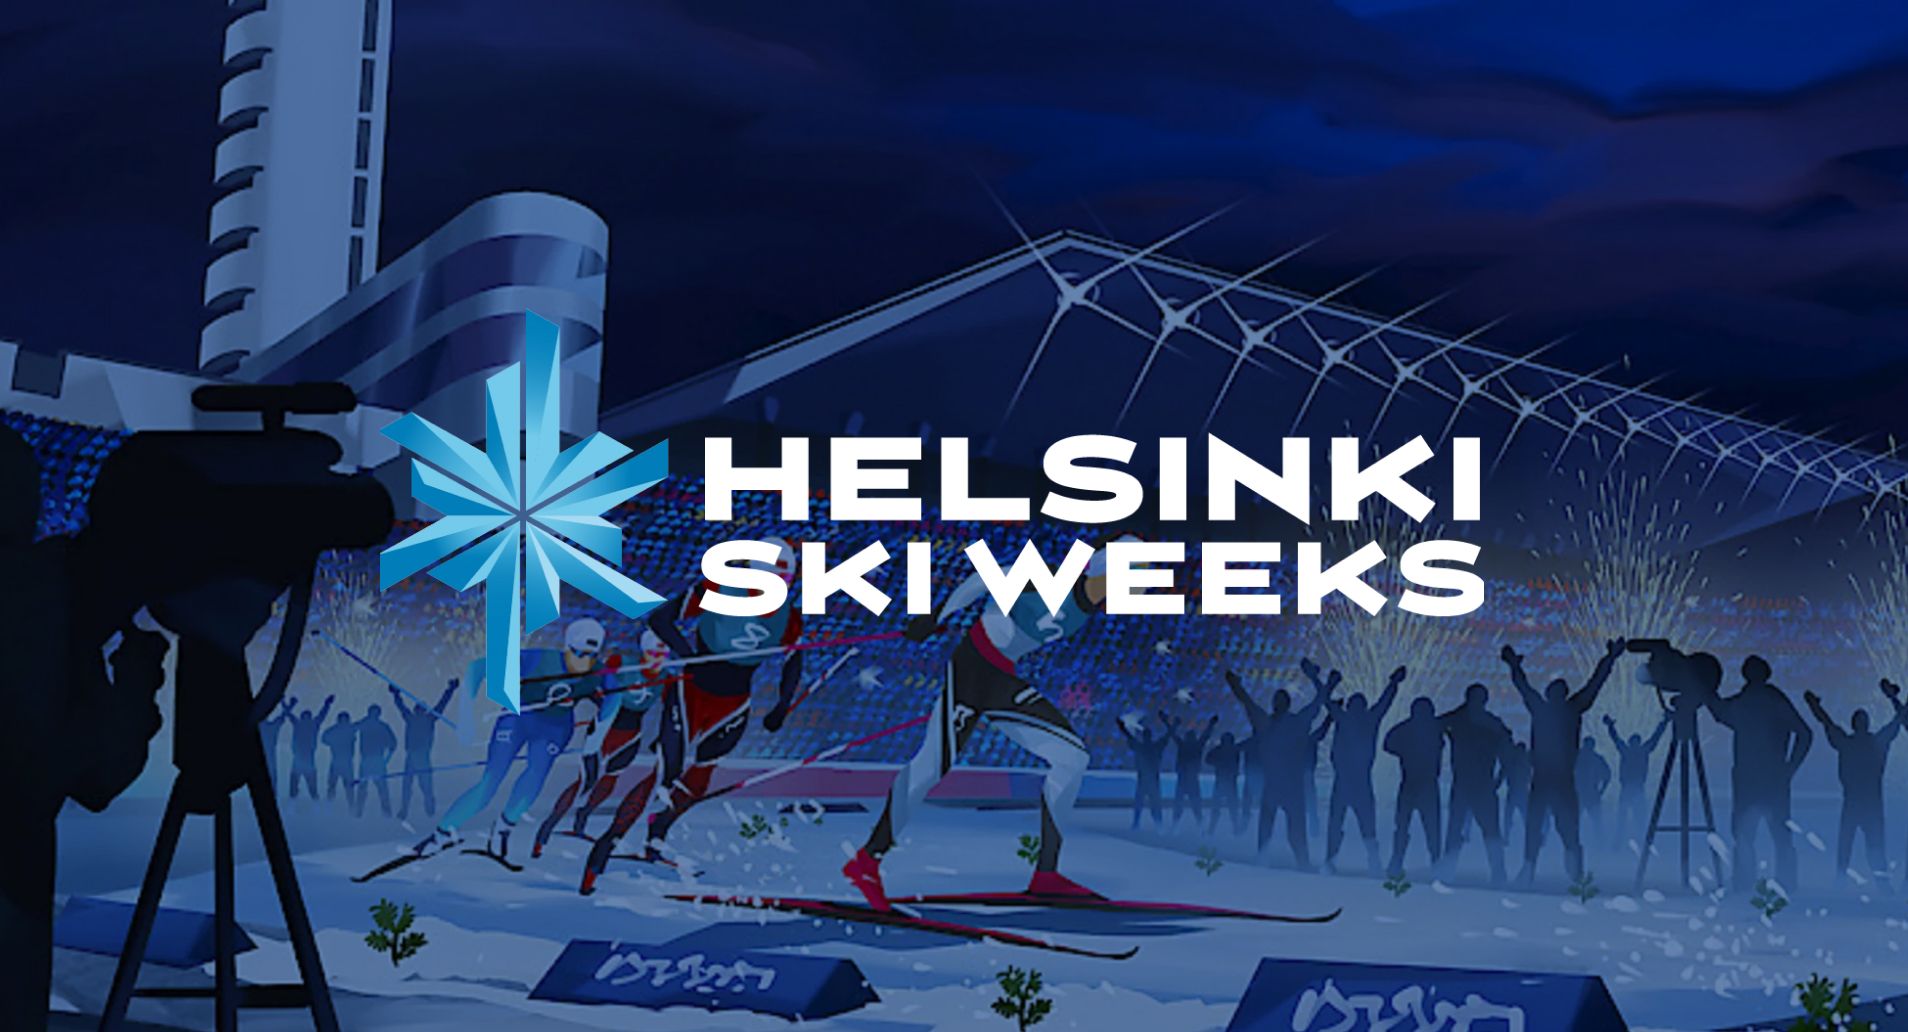 4Event - Helsinki Ski Weeks